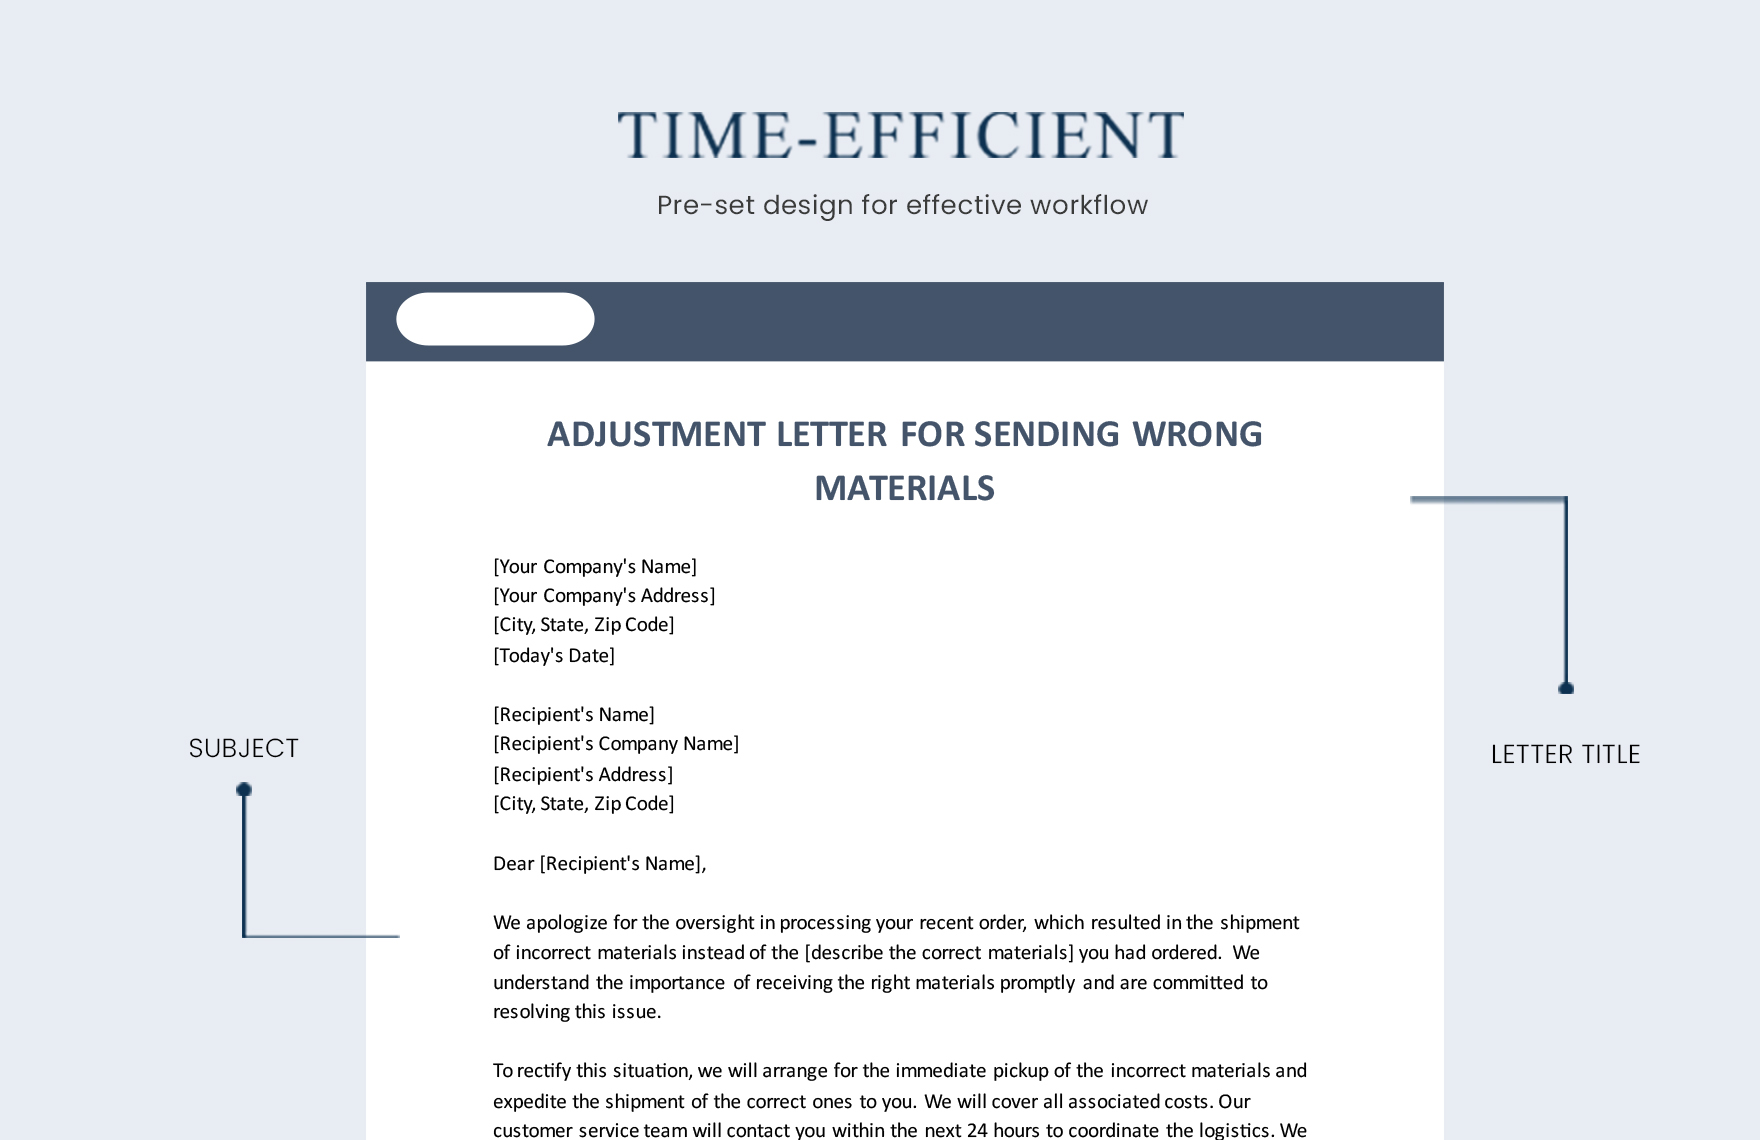 Adjustment Letter For Sending Wrong Materials